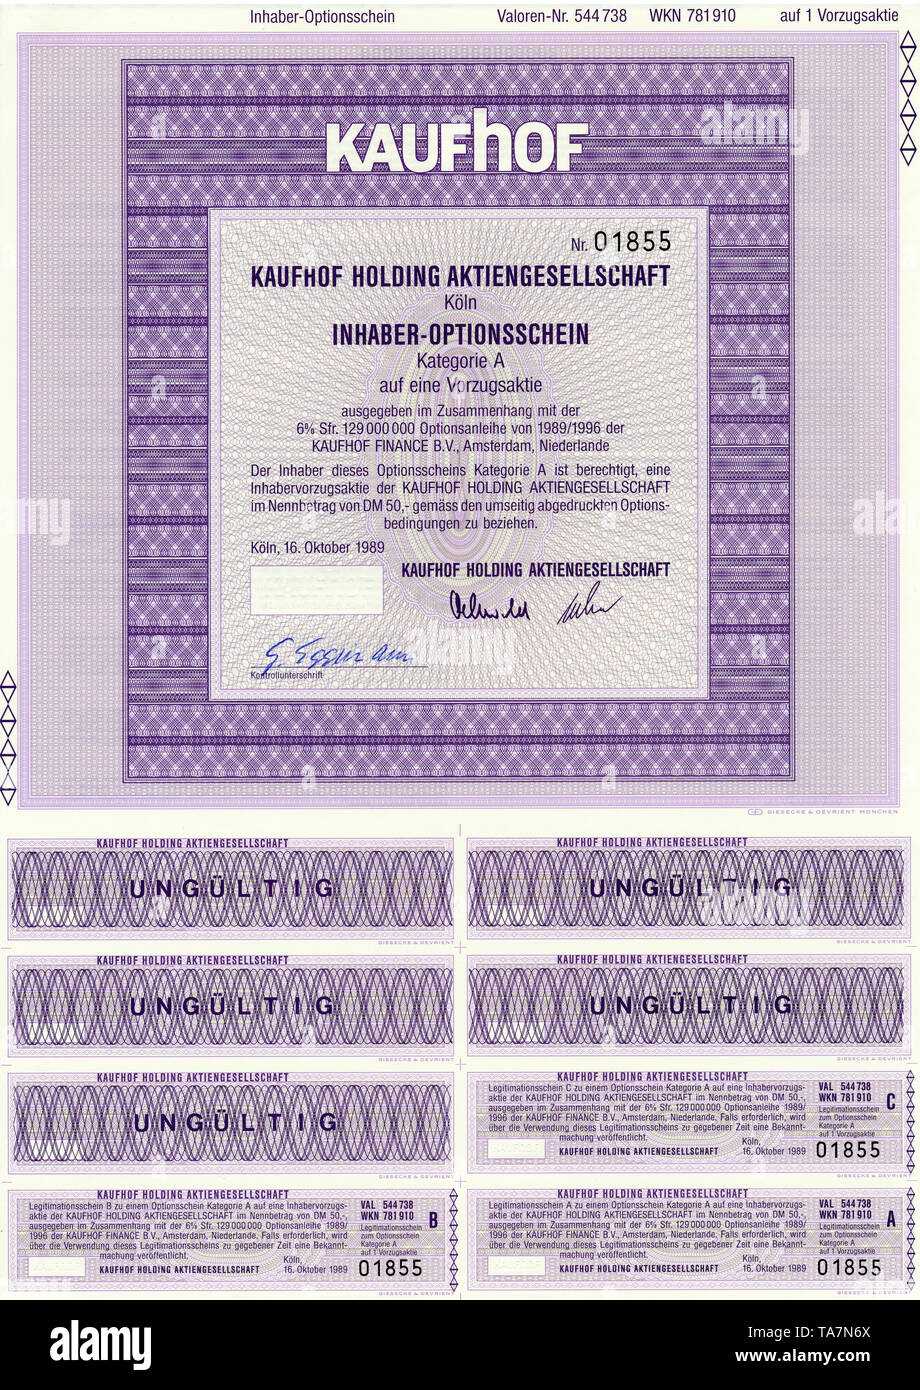 Historic Stock certificato, certificato di titoli al portatore, warrant, Germania, Historisches Wertpapier, Inhaber-Optionsschein, Kaufhof Holding Aktiengesellschaft, 1989, Köln, Deutschland, Europa Foto Stock